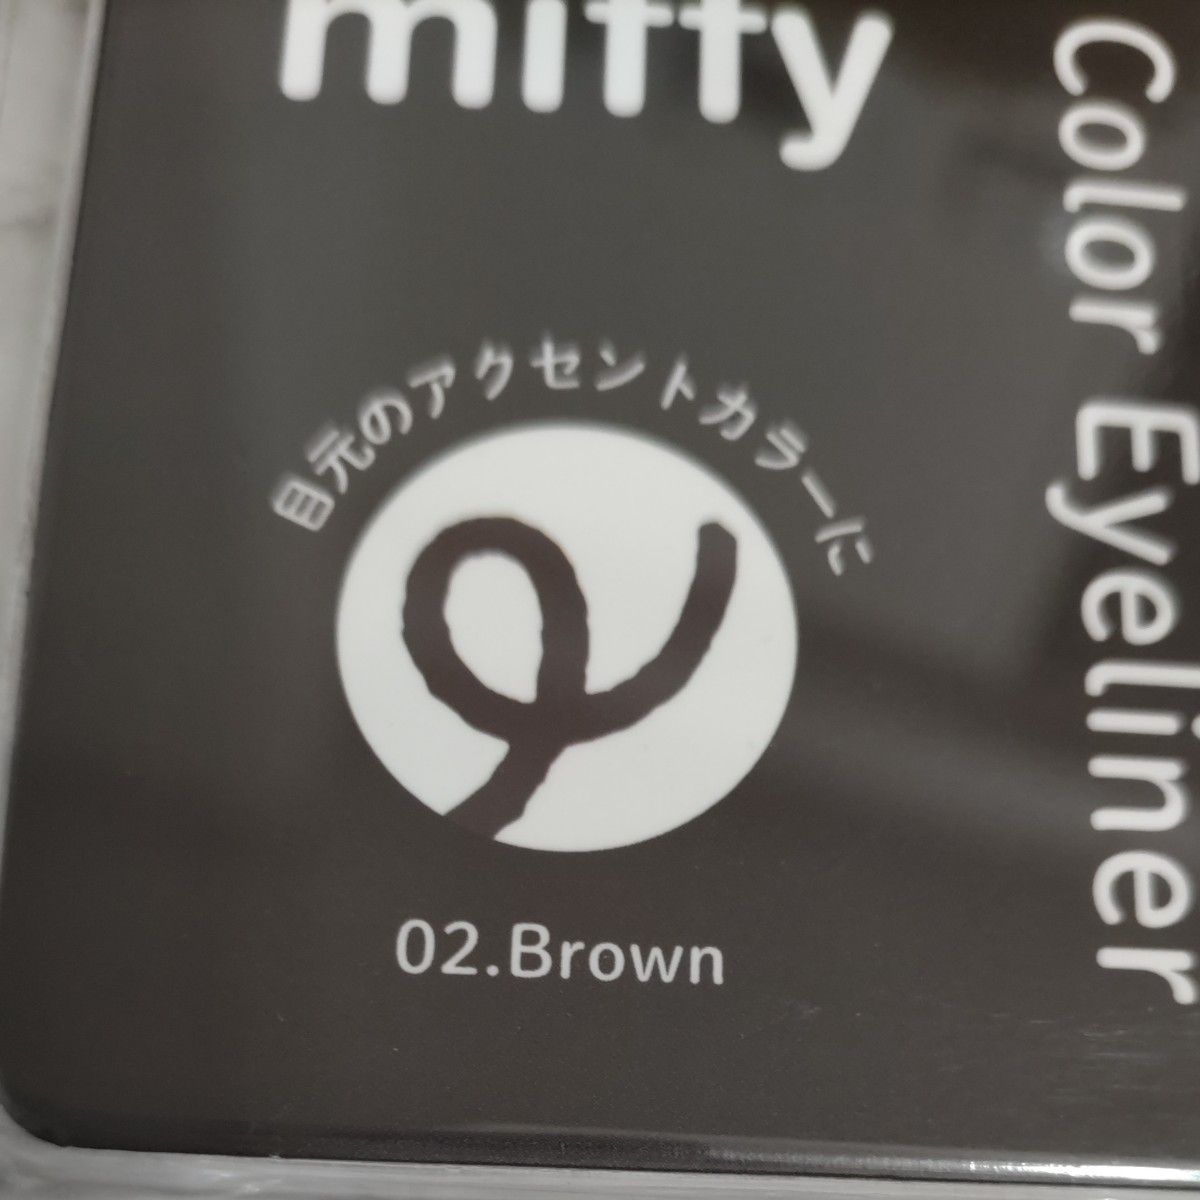 ミッフィー アイライナー 目元 メイク miffy コスメ かわいい キャラクター 